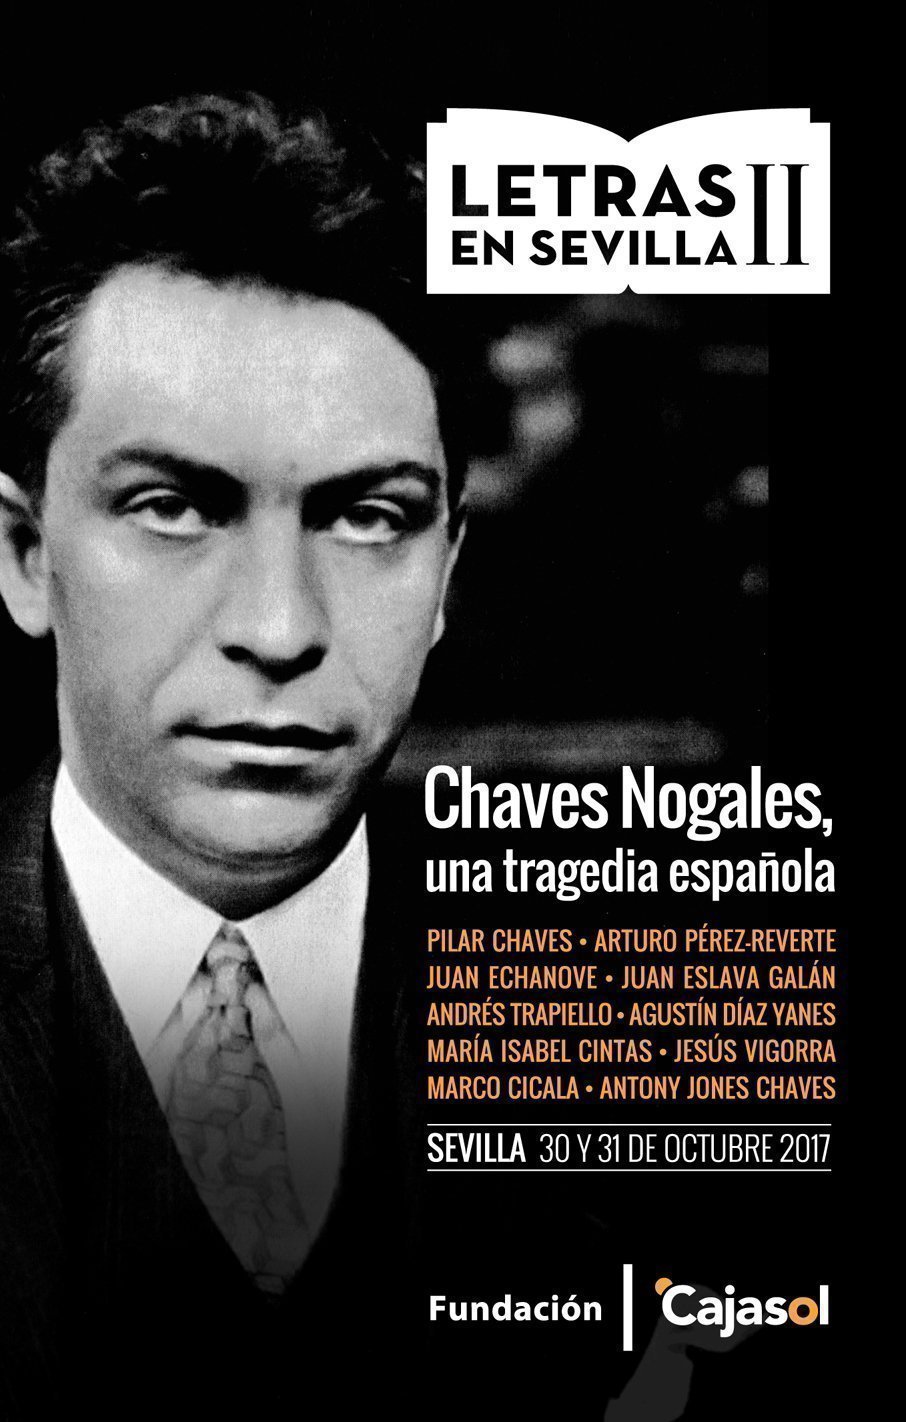 Chaves Nogales regresa a Sevilla